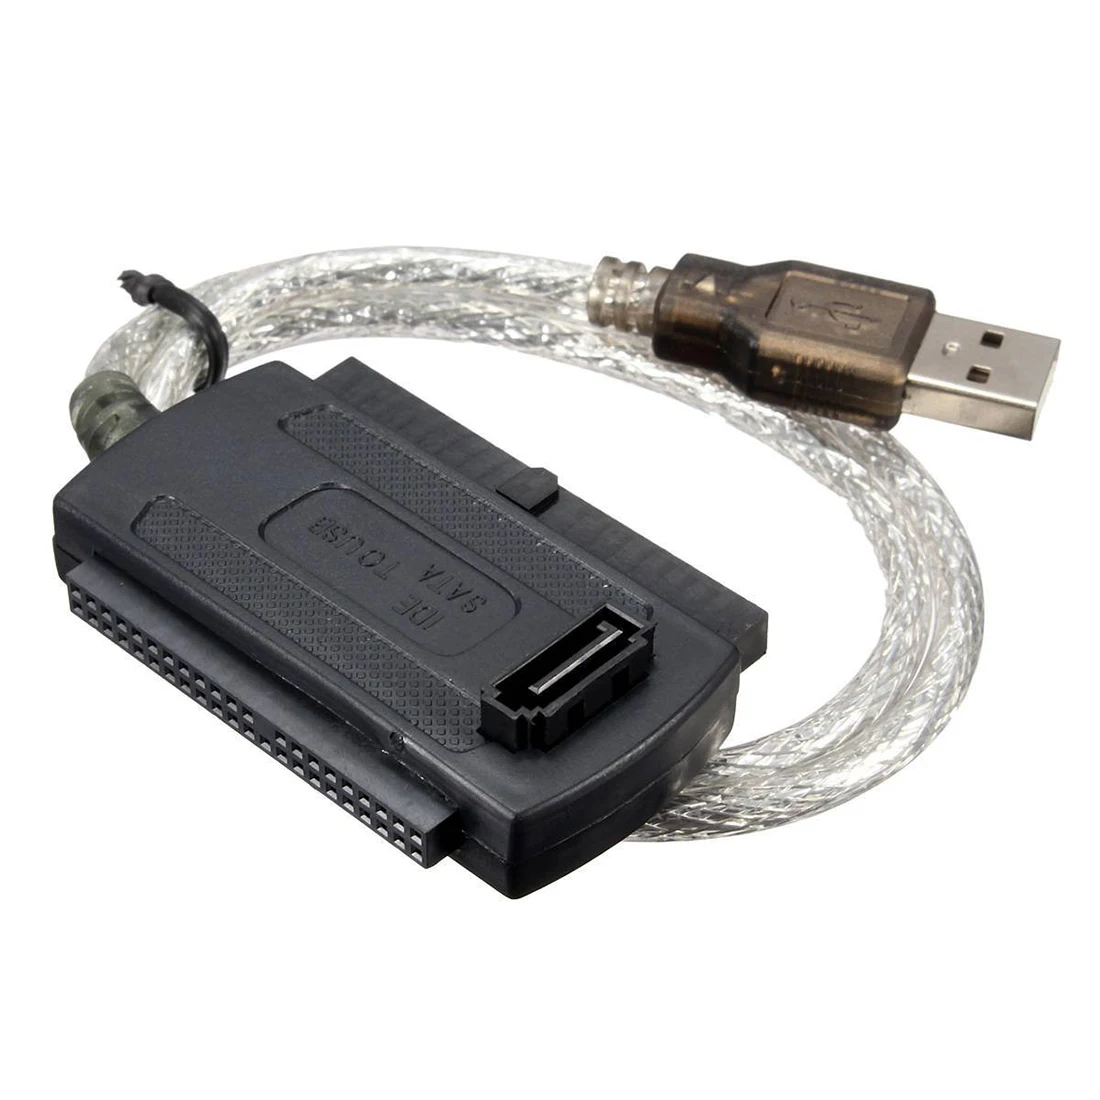 T9S8 USB 2.0 maschio per Convertitore IDE SATA Hard Drive Cavo Adattatore F 2.5" 3.5" HDD 